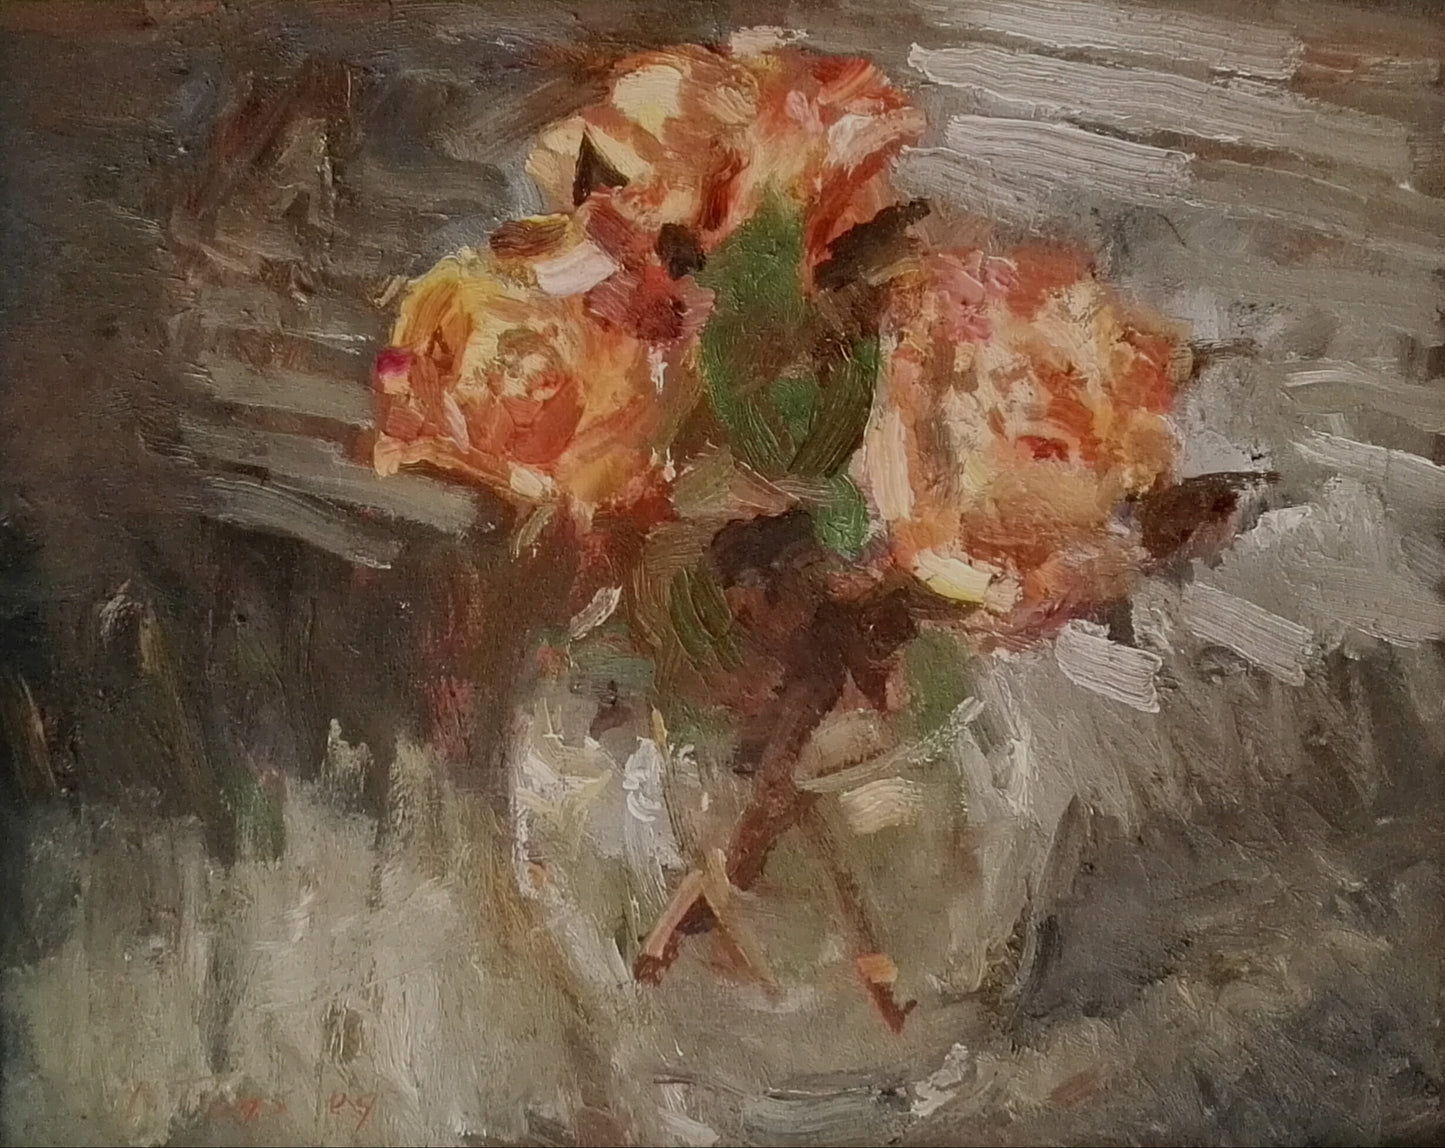 ‘Orange roses in a vase’ 2009 oil on linen 40x50cm